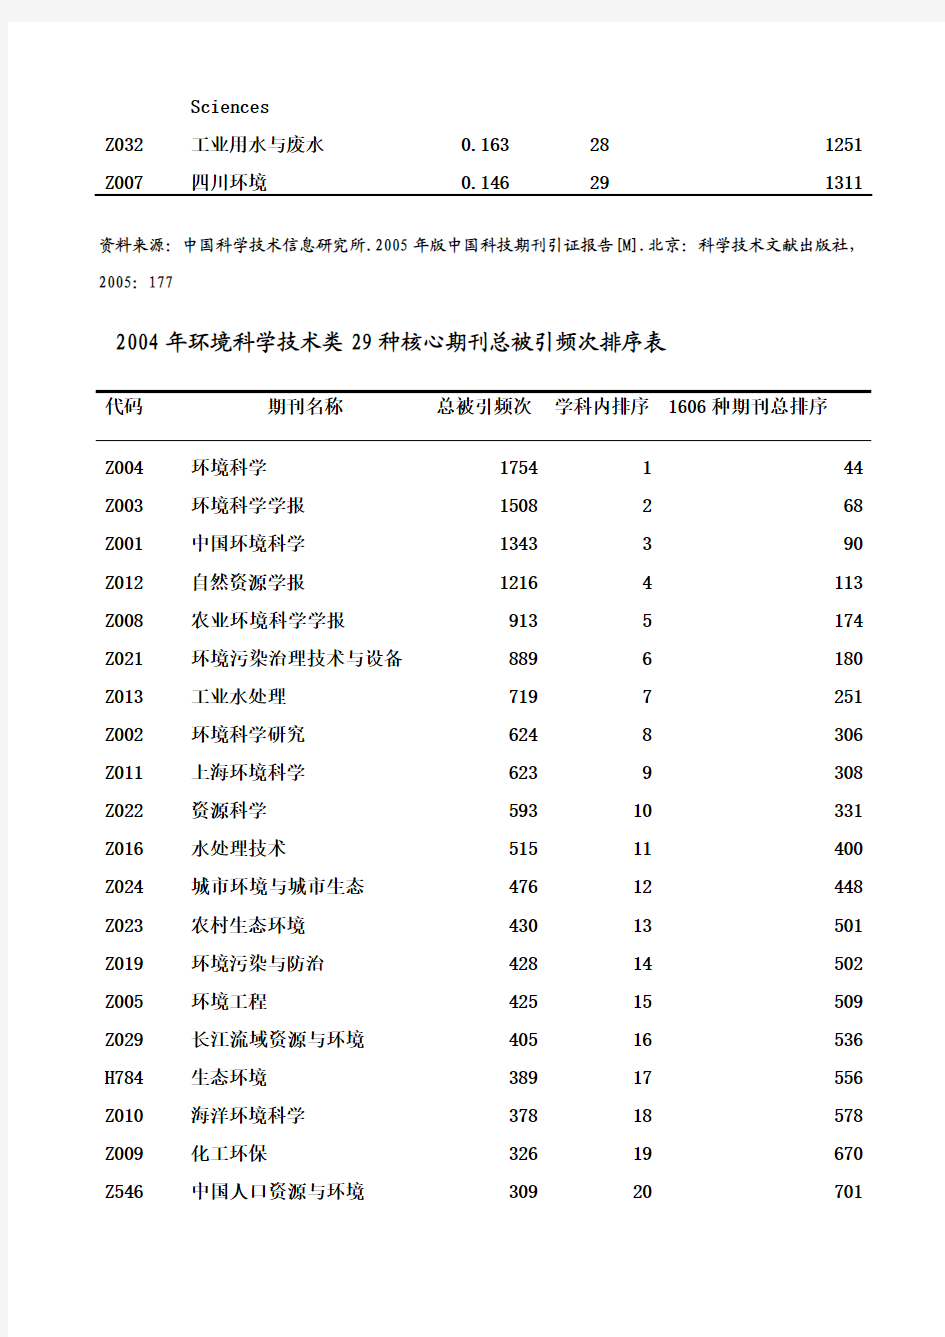 中国环境科学技术类29种核心期刊影响因子排序表